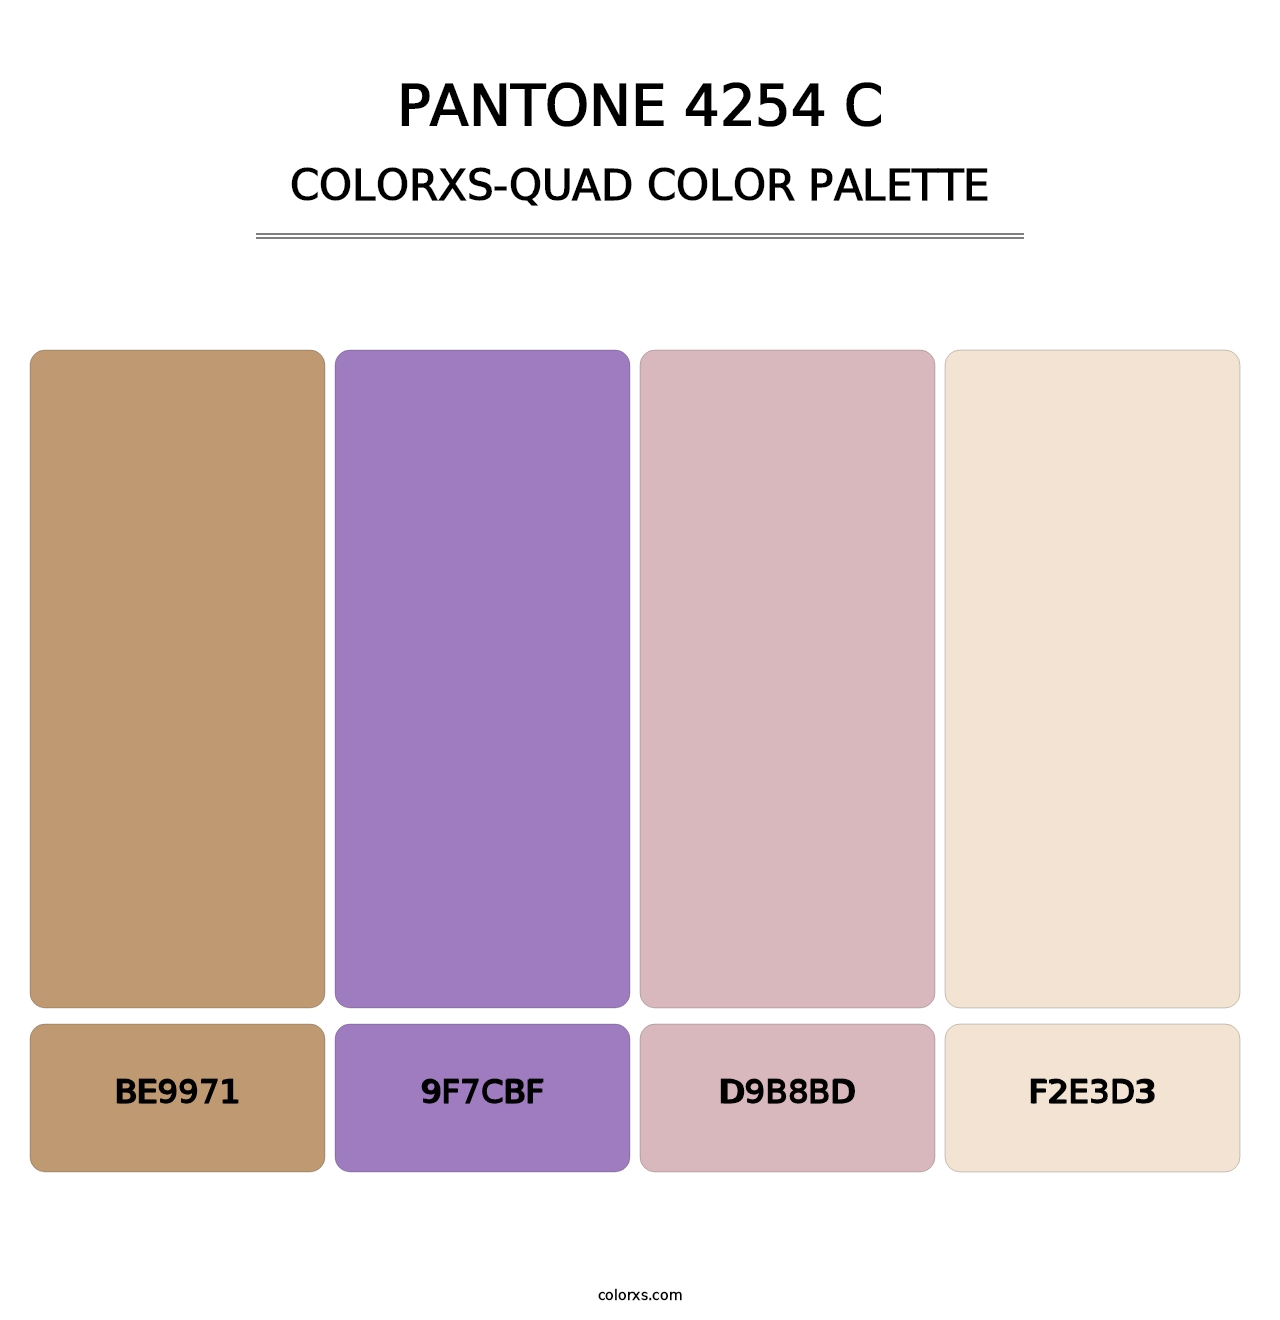 PANTONE 4254 C - Colorxs Quad Palette